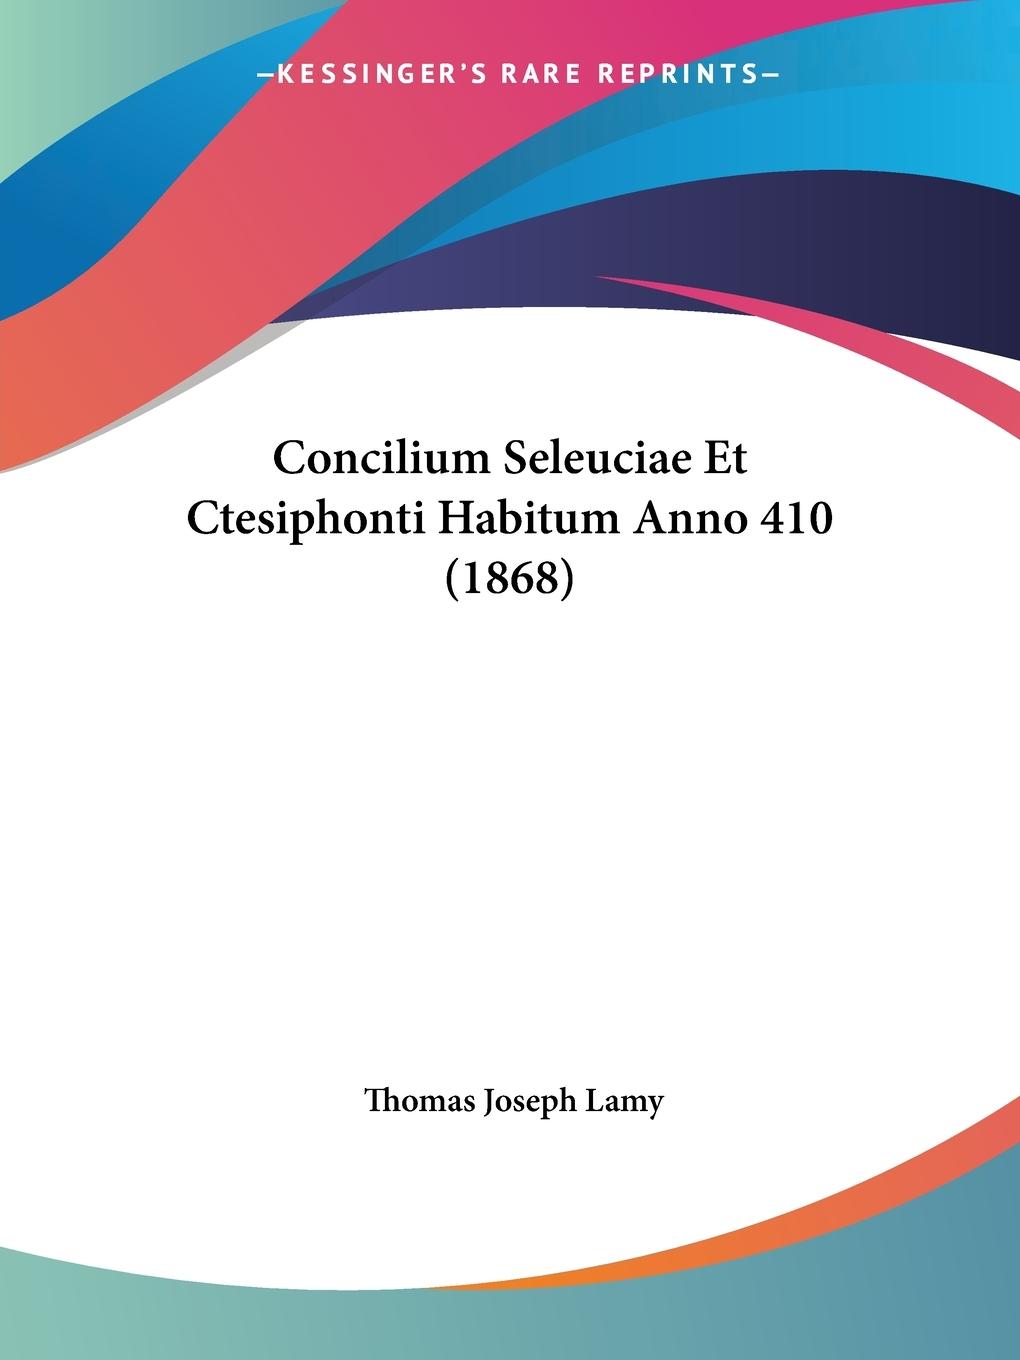 Concilium Seleuciae Et Ctesiphonti Habitum Anno 410 (1868) - Lamy, Thomas Joseph